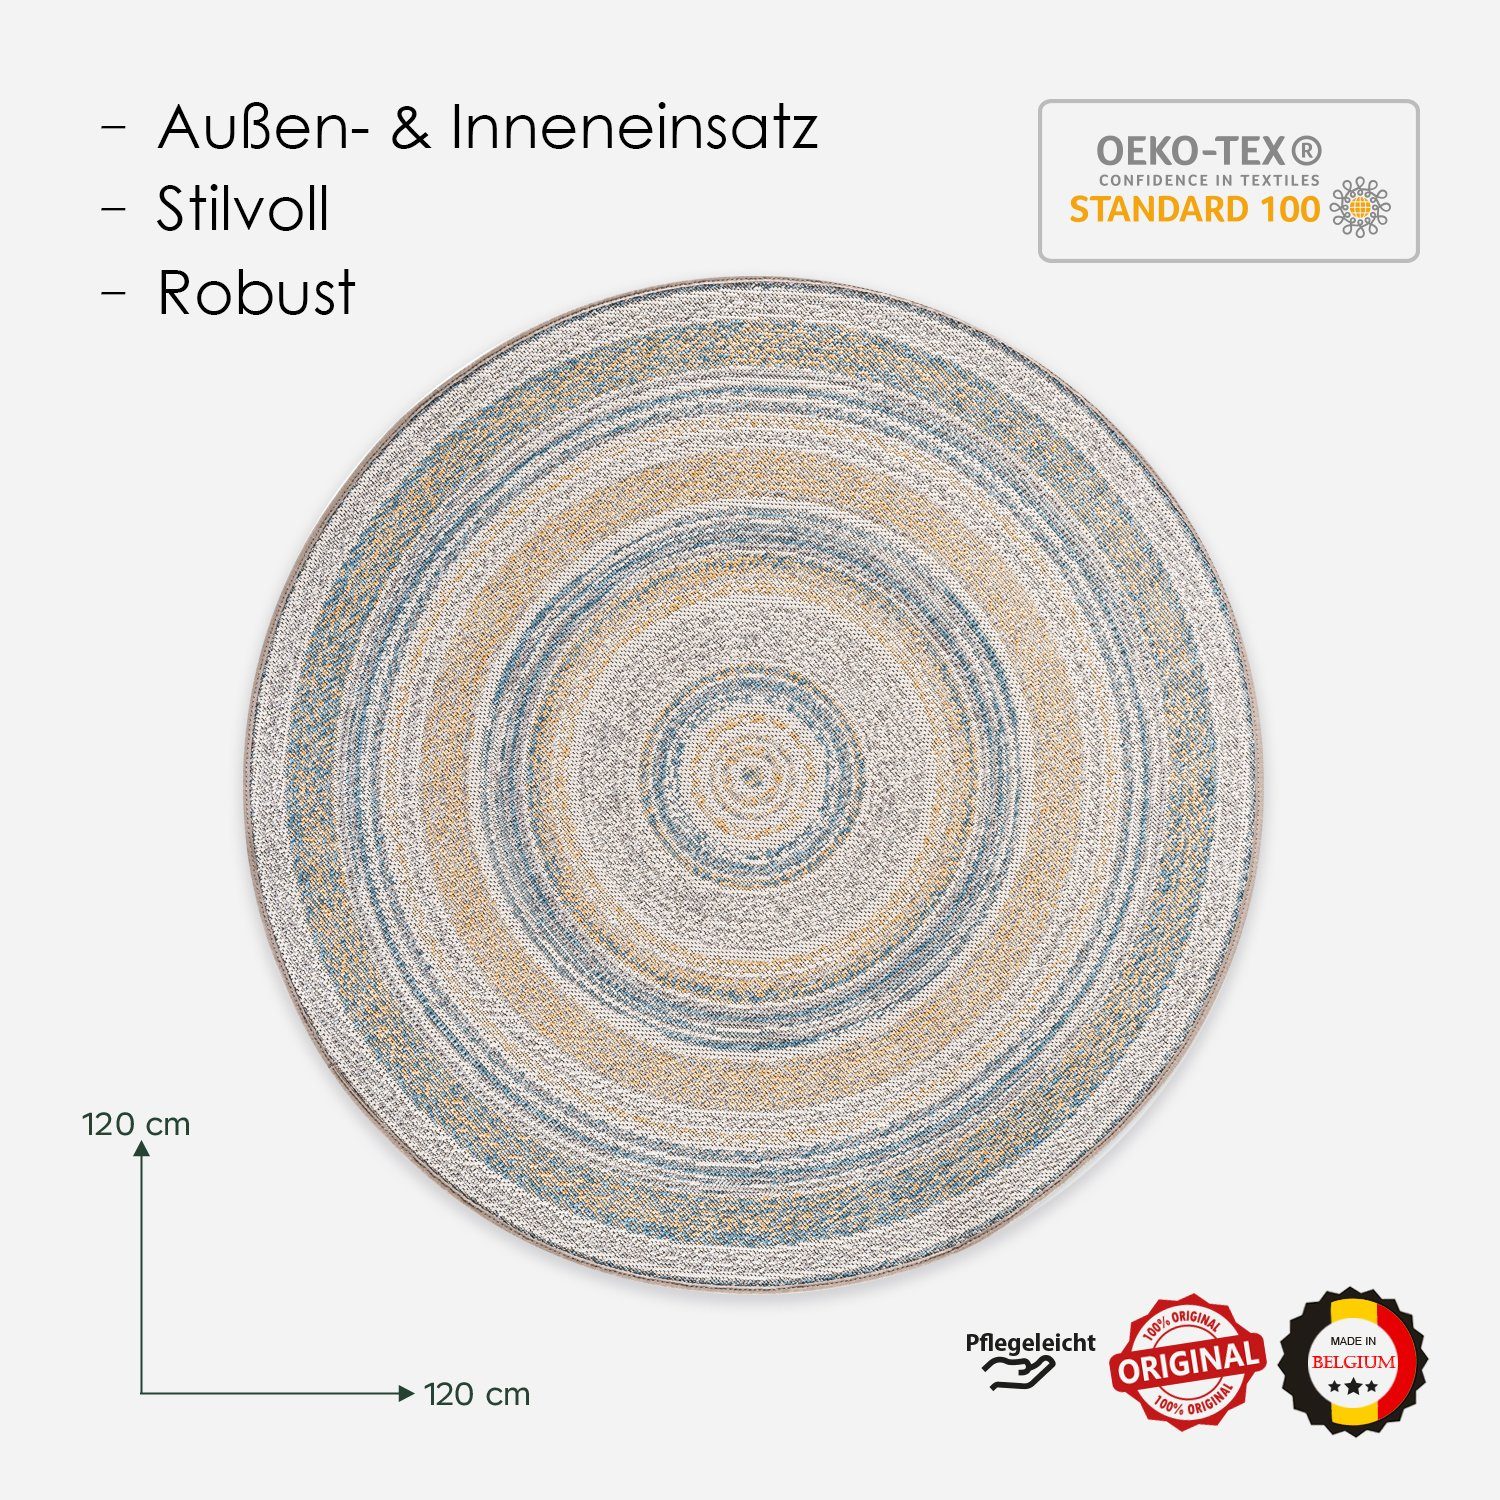 Record Teppich Innen für Außen, Kunststoff Classic Ø120cm Gelb-braun Teppich und aus Vinyl DomDeco Rund